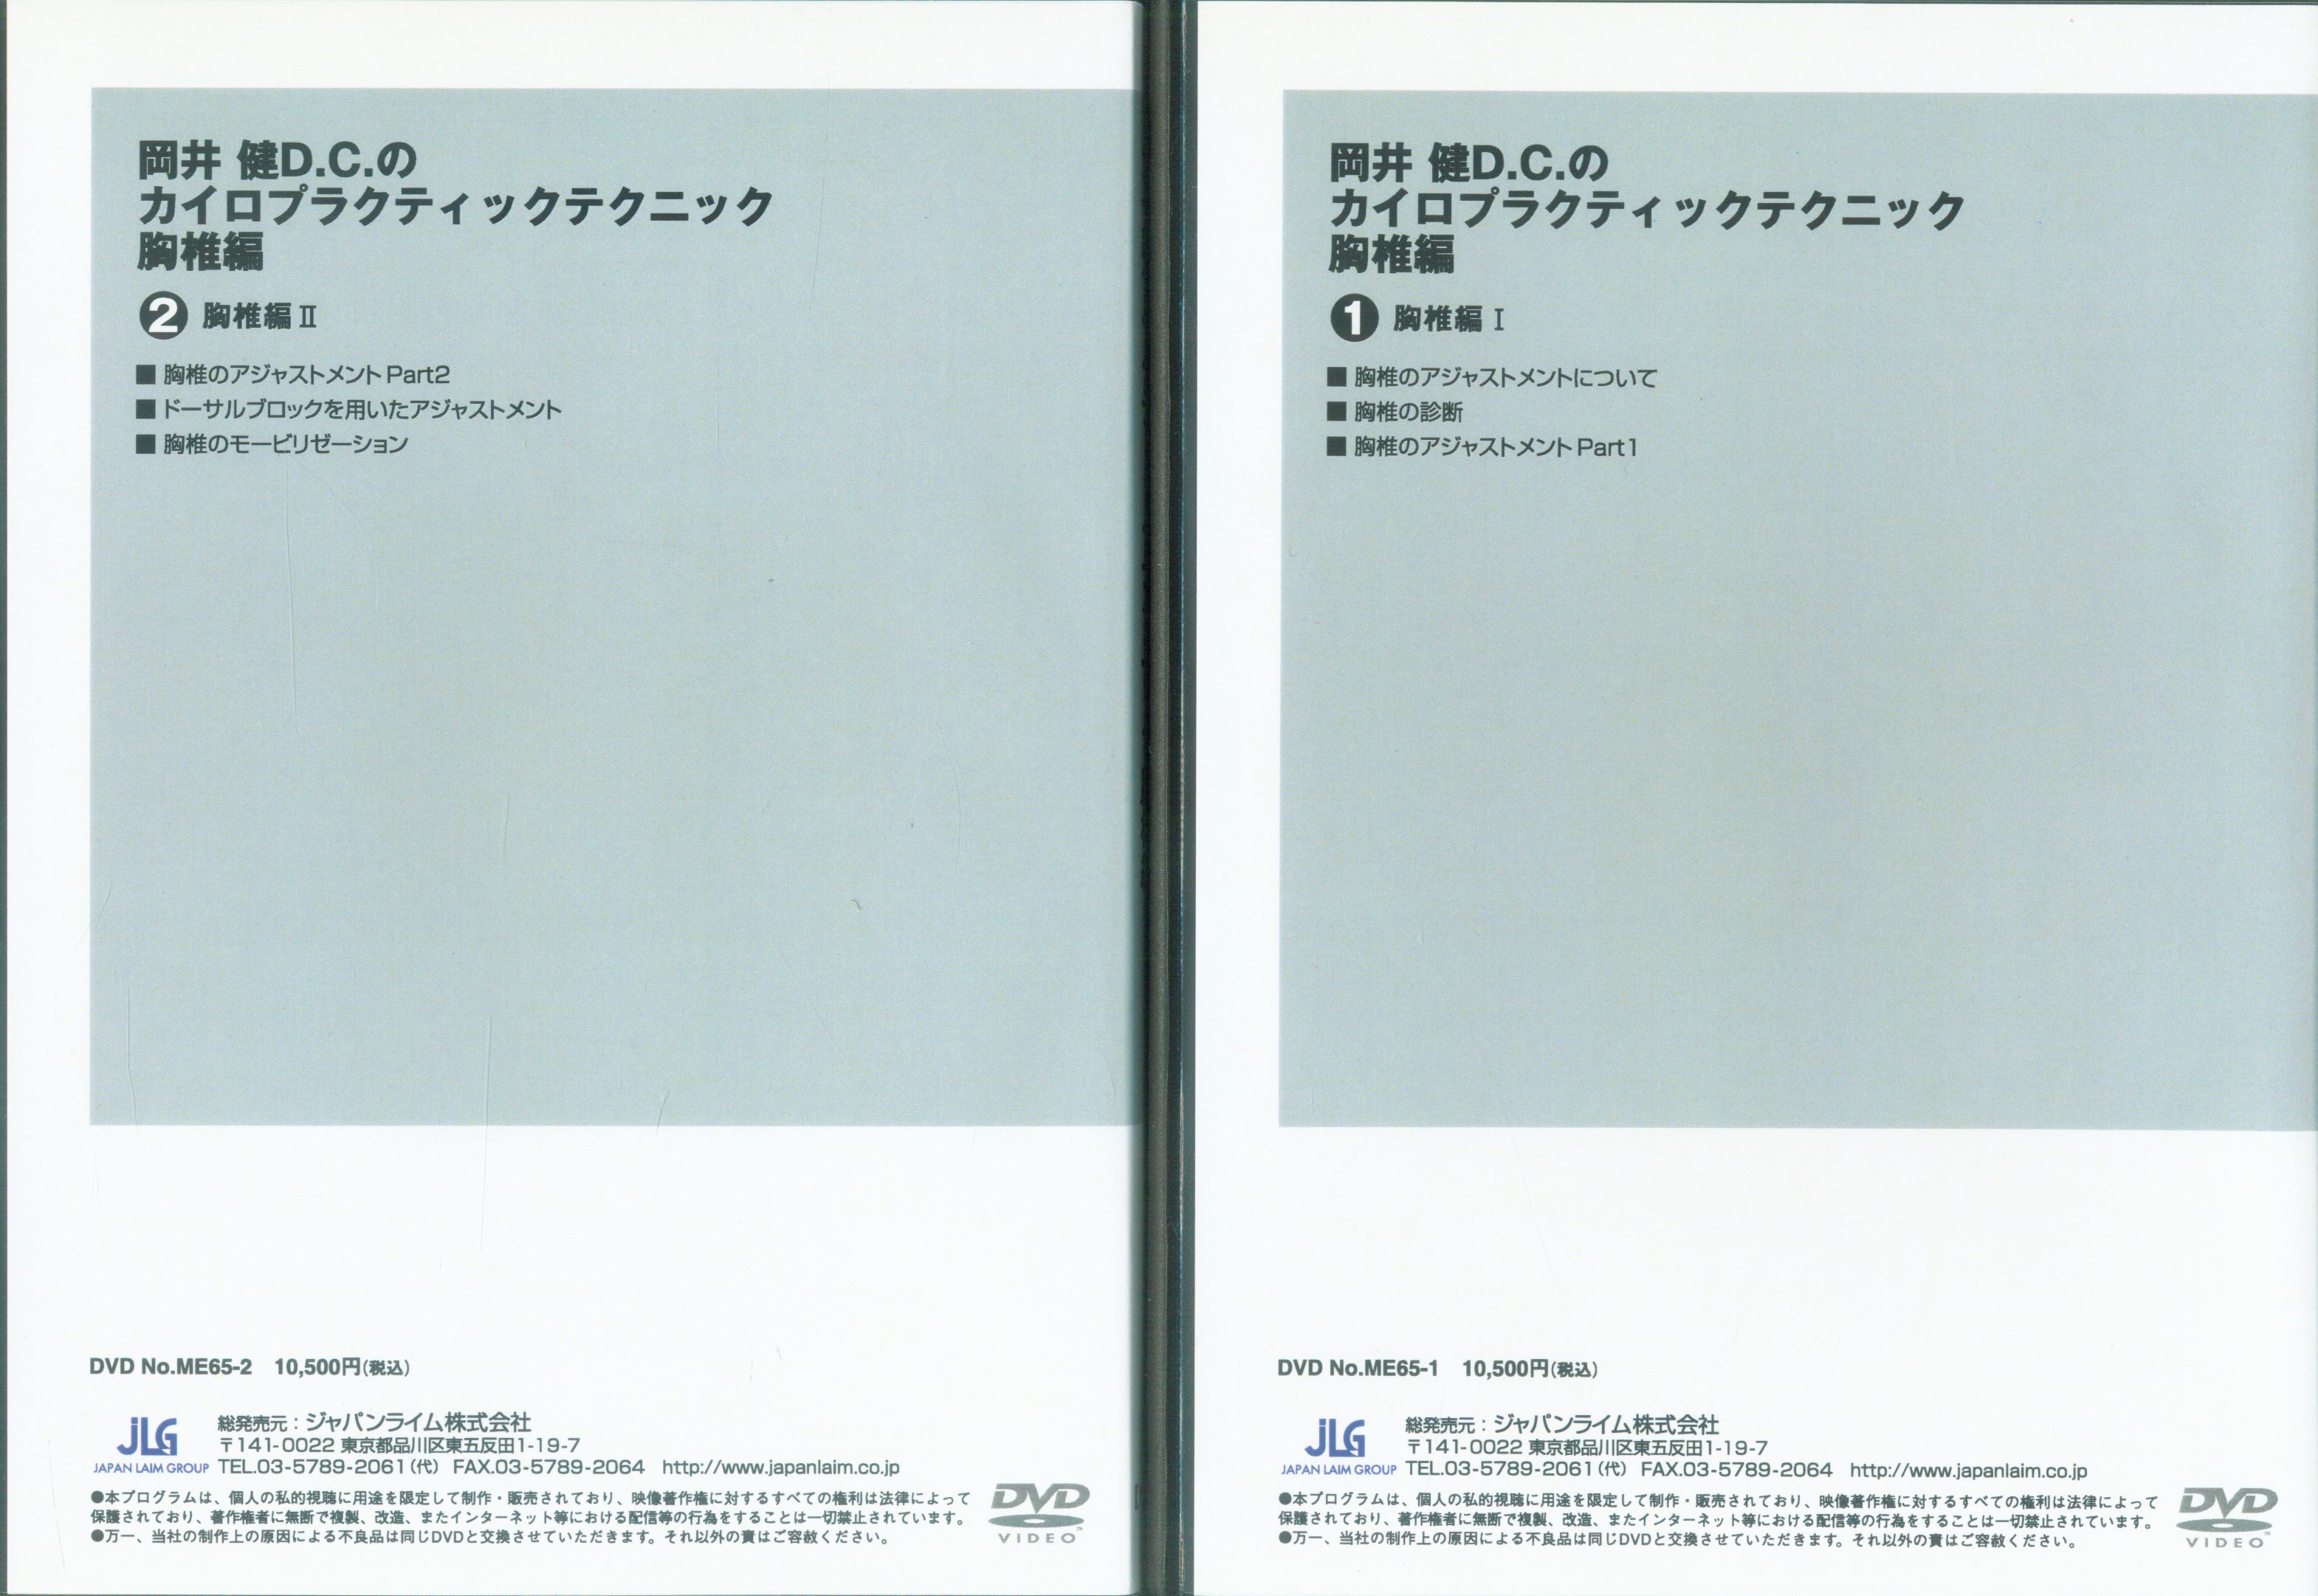 仲井光二D.C.のカイロプラクティック総合講座 全巻DVD - DVD/ブルーレイ